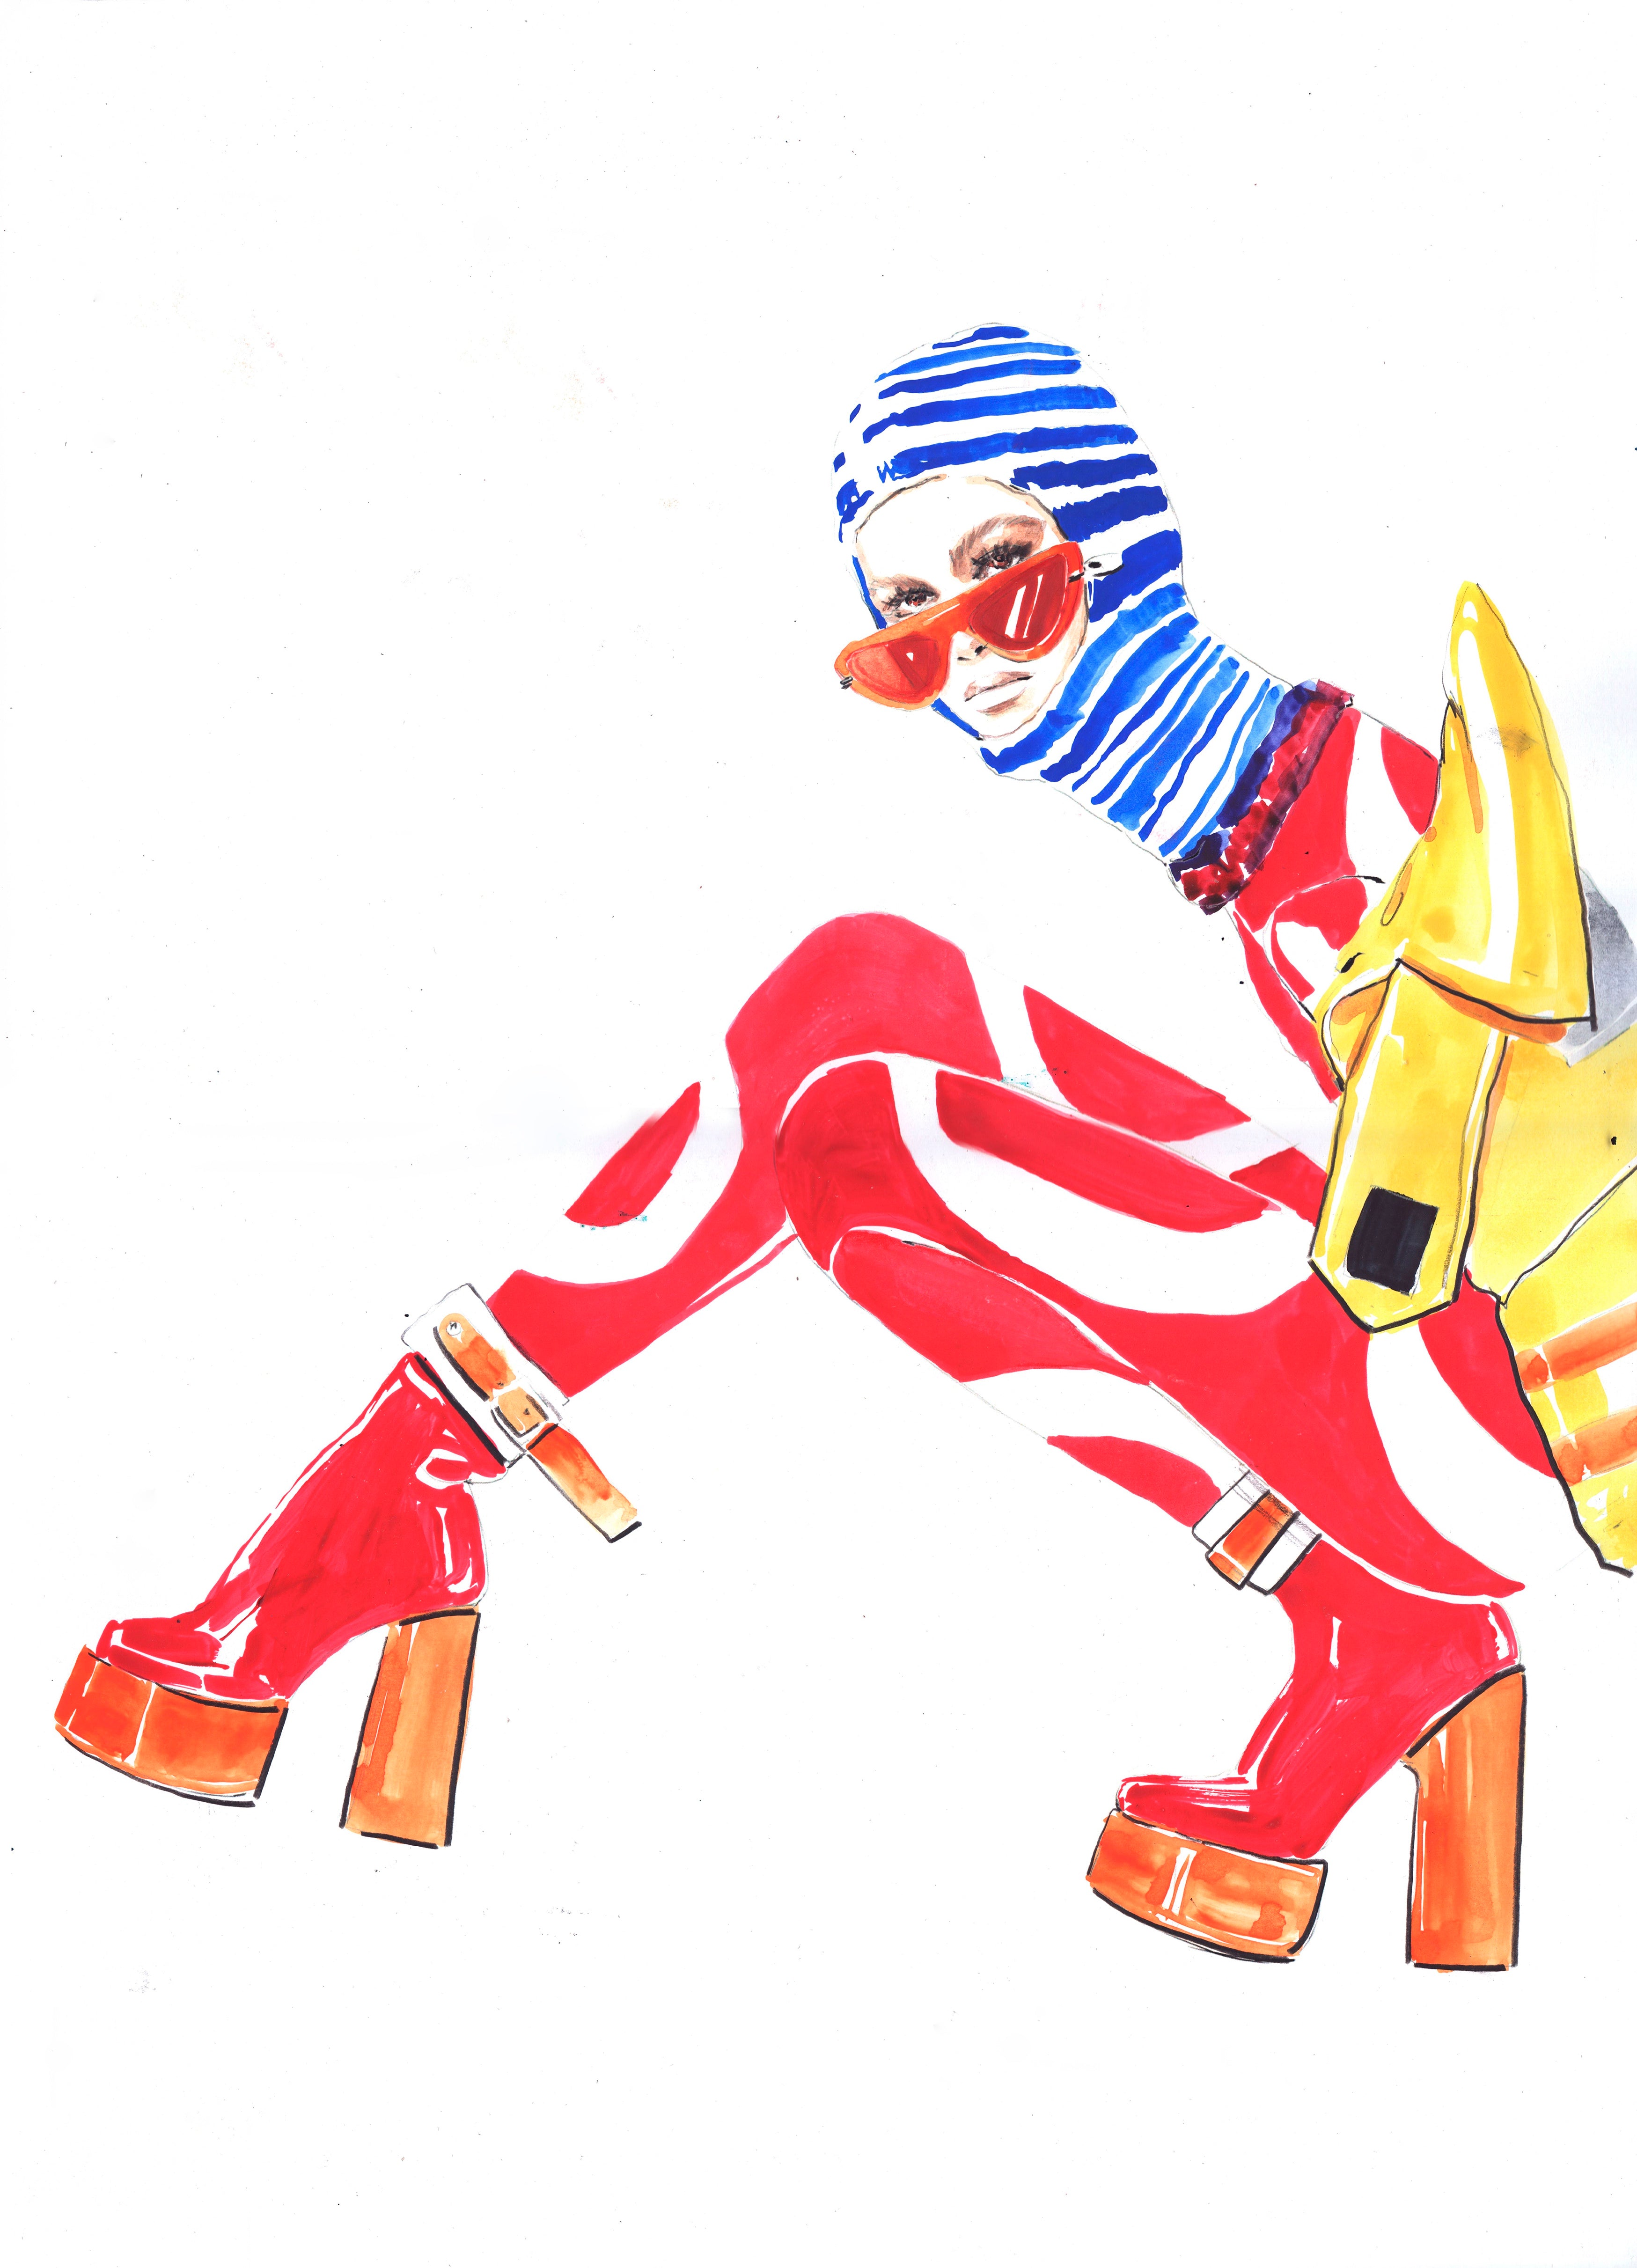 Retrouvez chez Acid Gallery les oeuvres de Zhenya Z, galerie d'art contemporain, Vieux Lille | Aquarelle et crayons de couleur sur papier Watercolor, color pencils on paper Dimensions A3 29,7 x 42 cm 2018